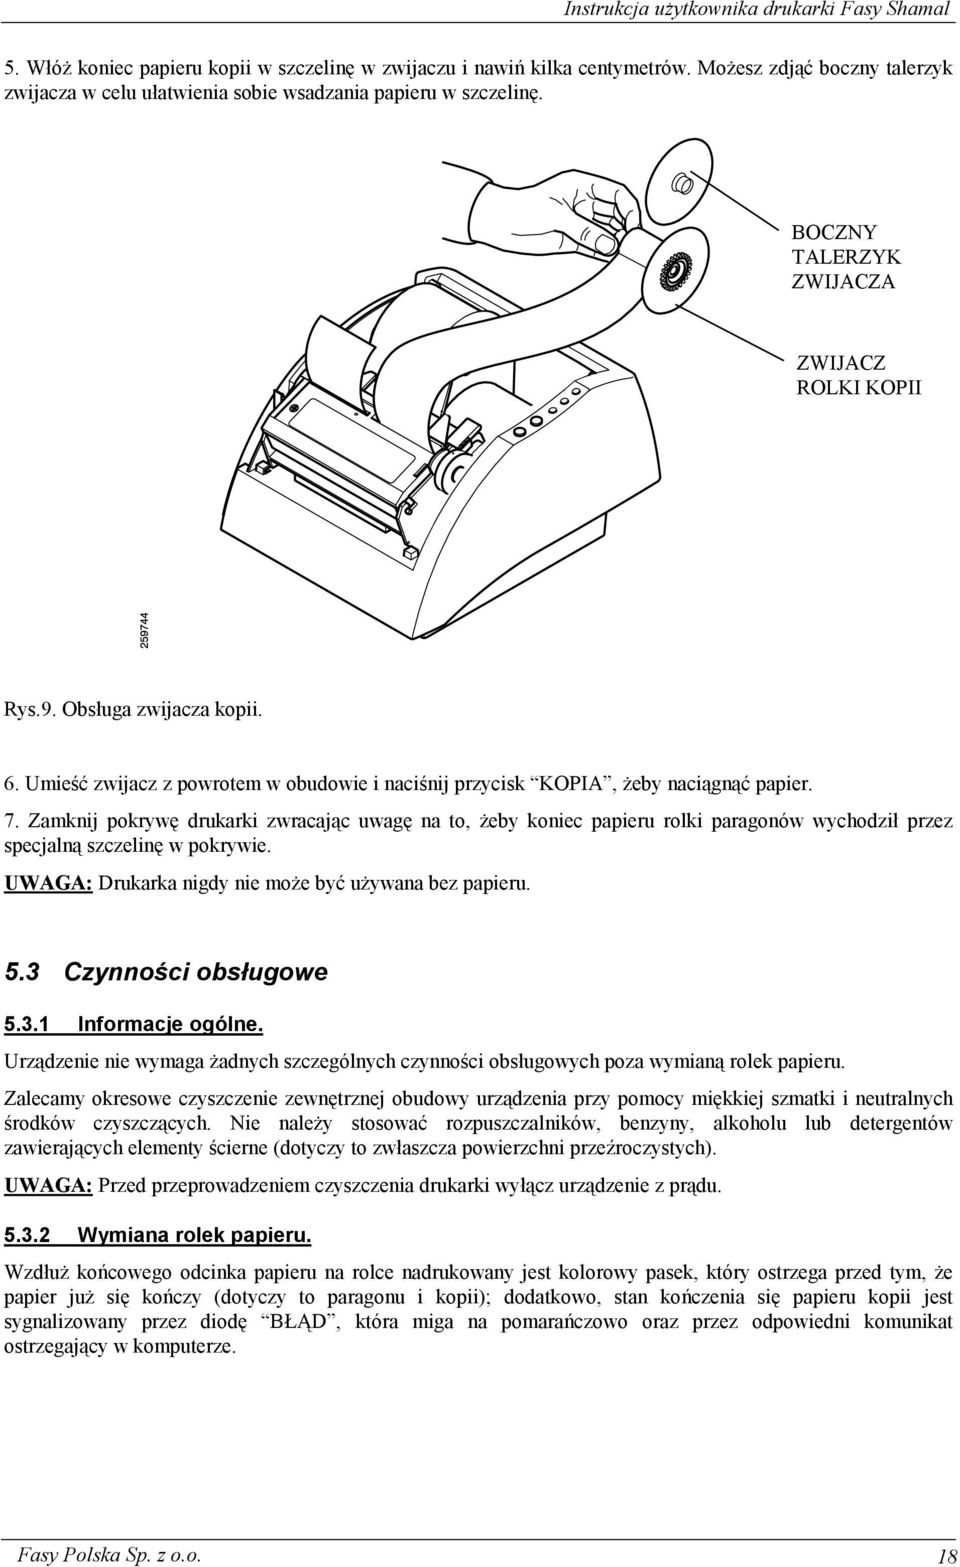 Zamknij pokrywę drukarki zwracając uwagę na to, żeby koniec papieru rolki paragonów wychodził przez specjalną szczelinę w pokrywie. UWAGA: Drukarka nigdy nie może być używana bez papieru. 5.